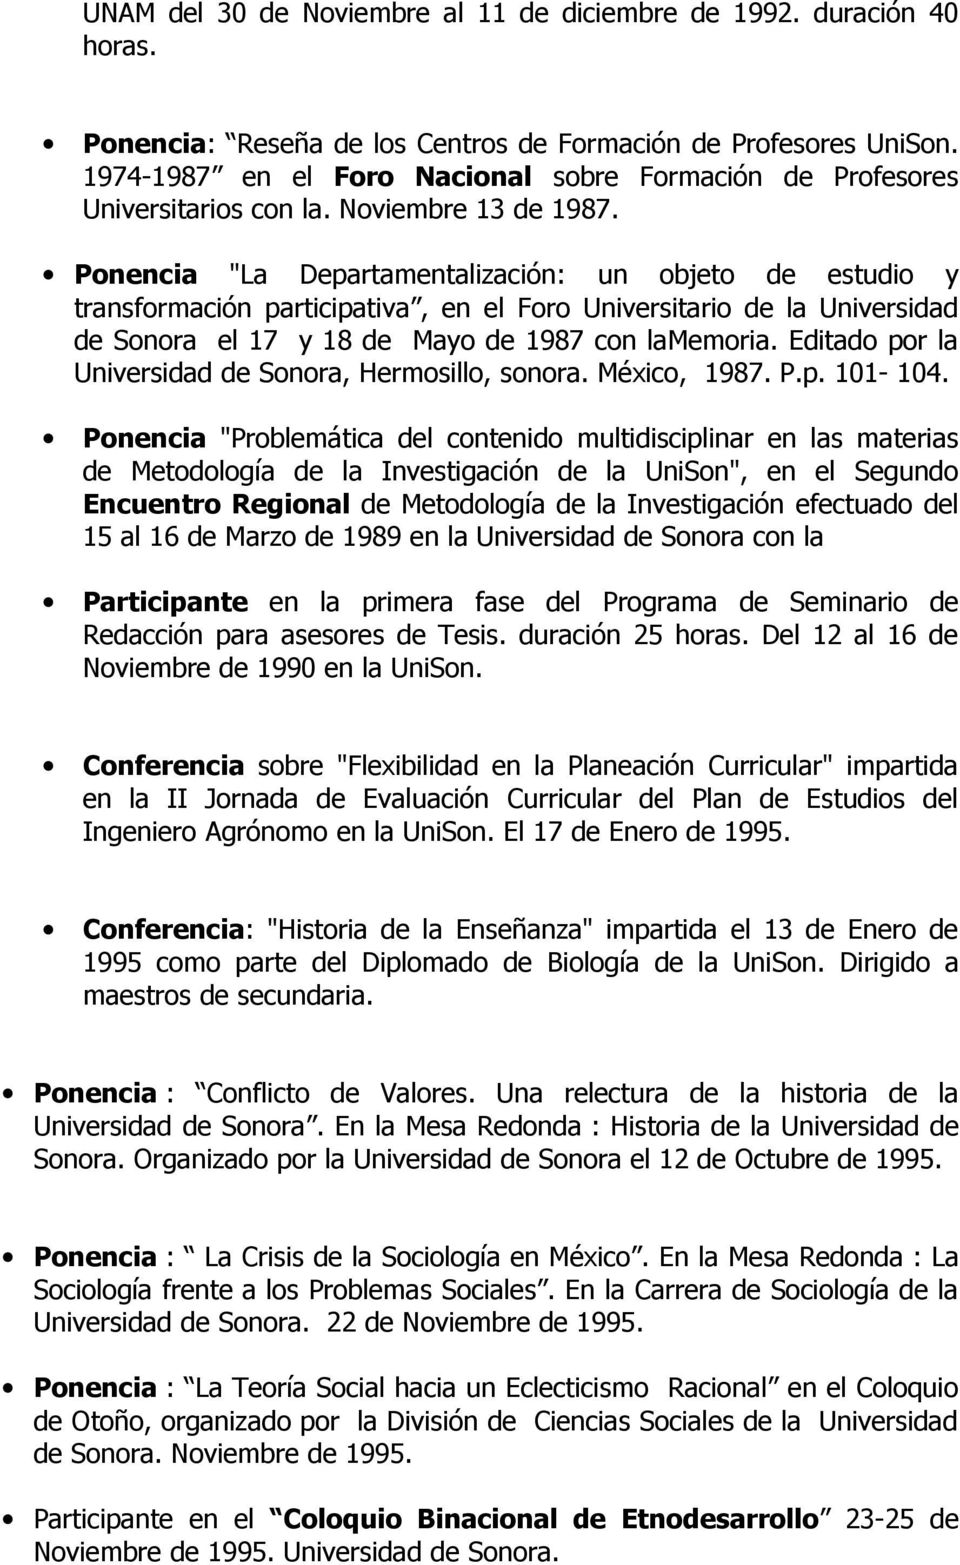 Ponencia "La Departamentalización: un objeto de estudio y transformación participativa, en el Foro Universitario de la Universidad de Sonora el 17 y 18 de Mayo de 1987 con lamemoria.